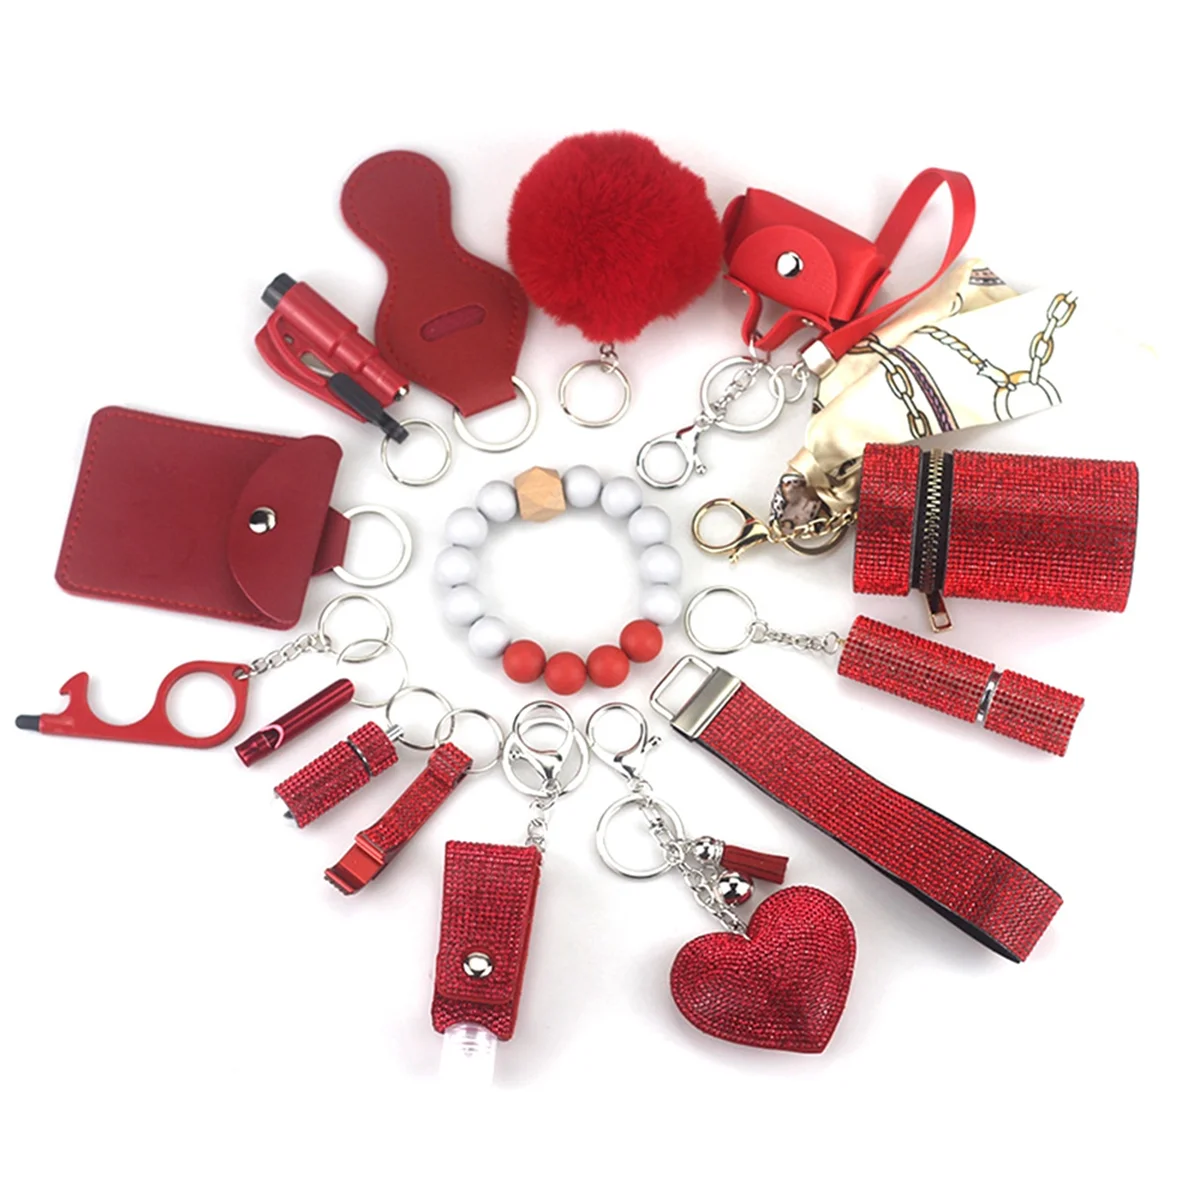 

Keychain Pendant Set for Woman with Pom Pom Ball,Lip Balm Lanyard,Whistle,Travel Bottle Holder,Bottle Open